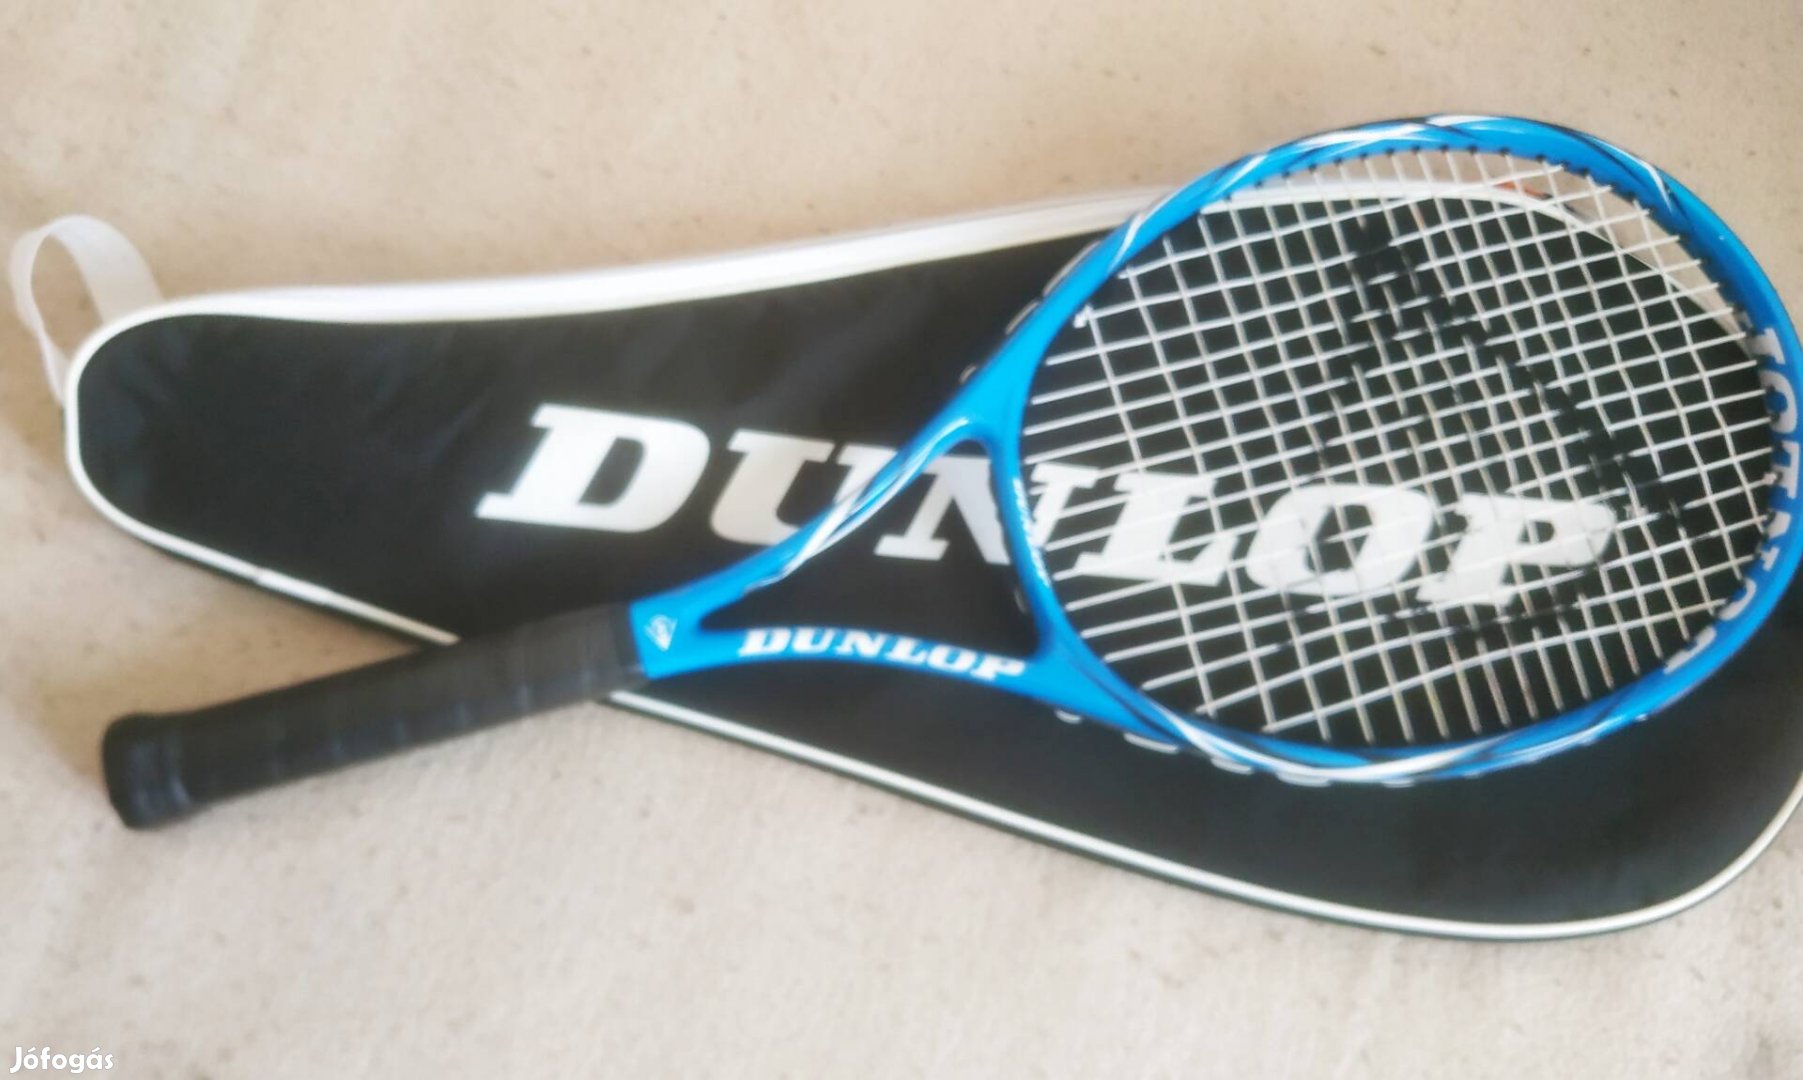 Dunlop Fury C98 grafit ötvözet teniszütő tokkal együtt  szuper áron!